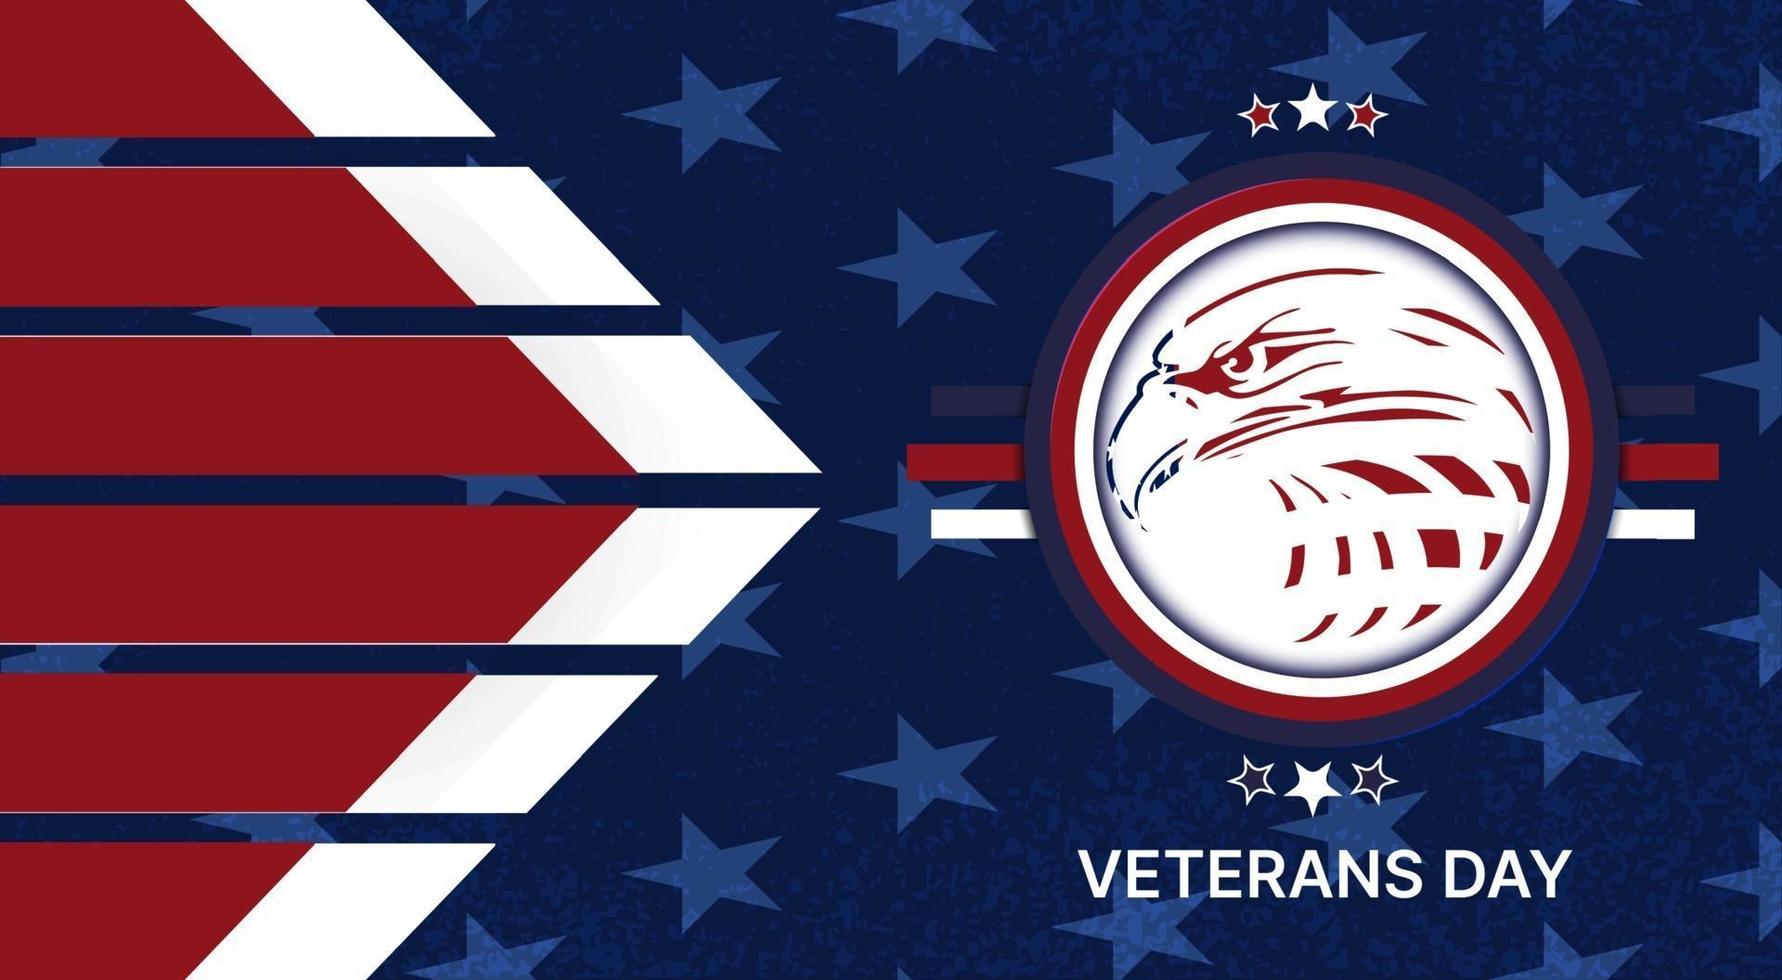 día de los veteranos americanos vector